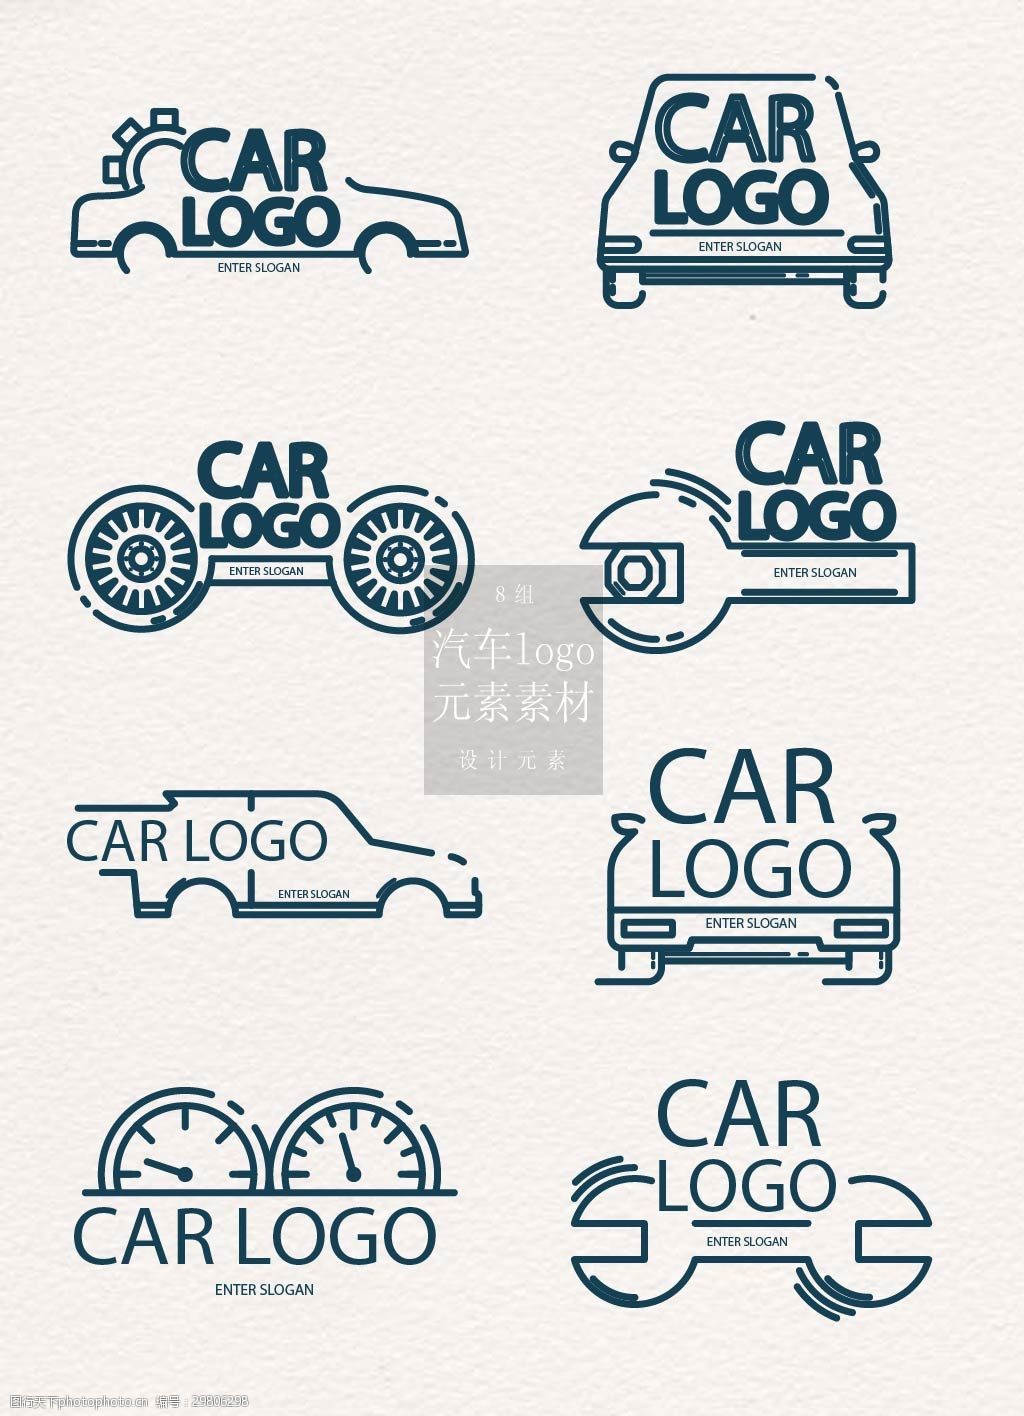 关键词:简约的汽车logo素材 扳手 创意 汽车logo logo设计 矢量素材